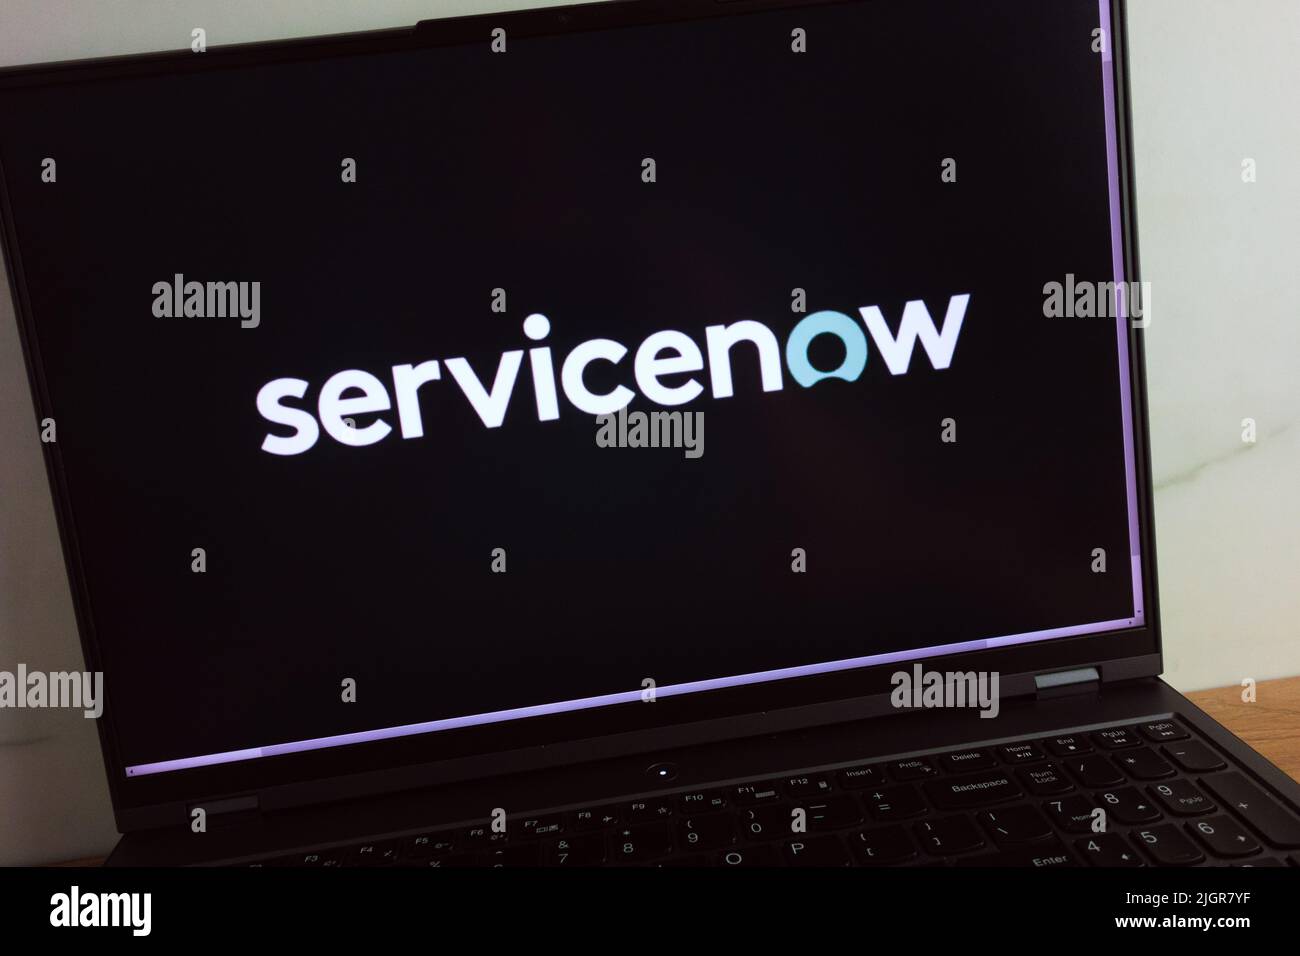 KONSKIE, POLEN - 11. Juli 2022: Das Logo des Softwareunternehmens ServiceNow wird auf dem Bildschirm des Laptops angezeigt Stockfoto